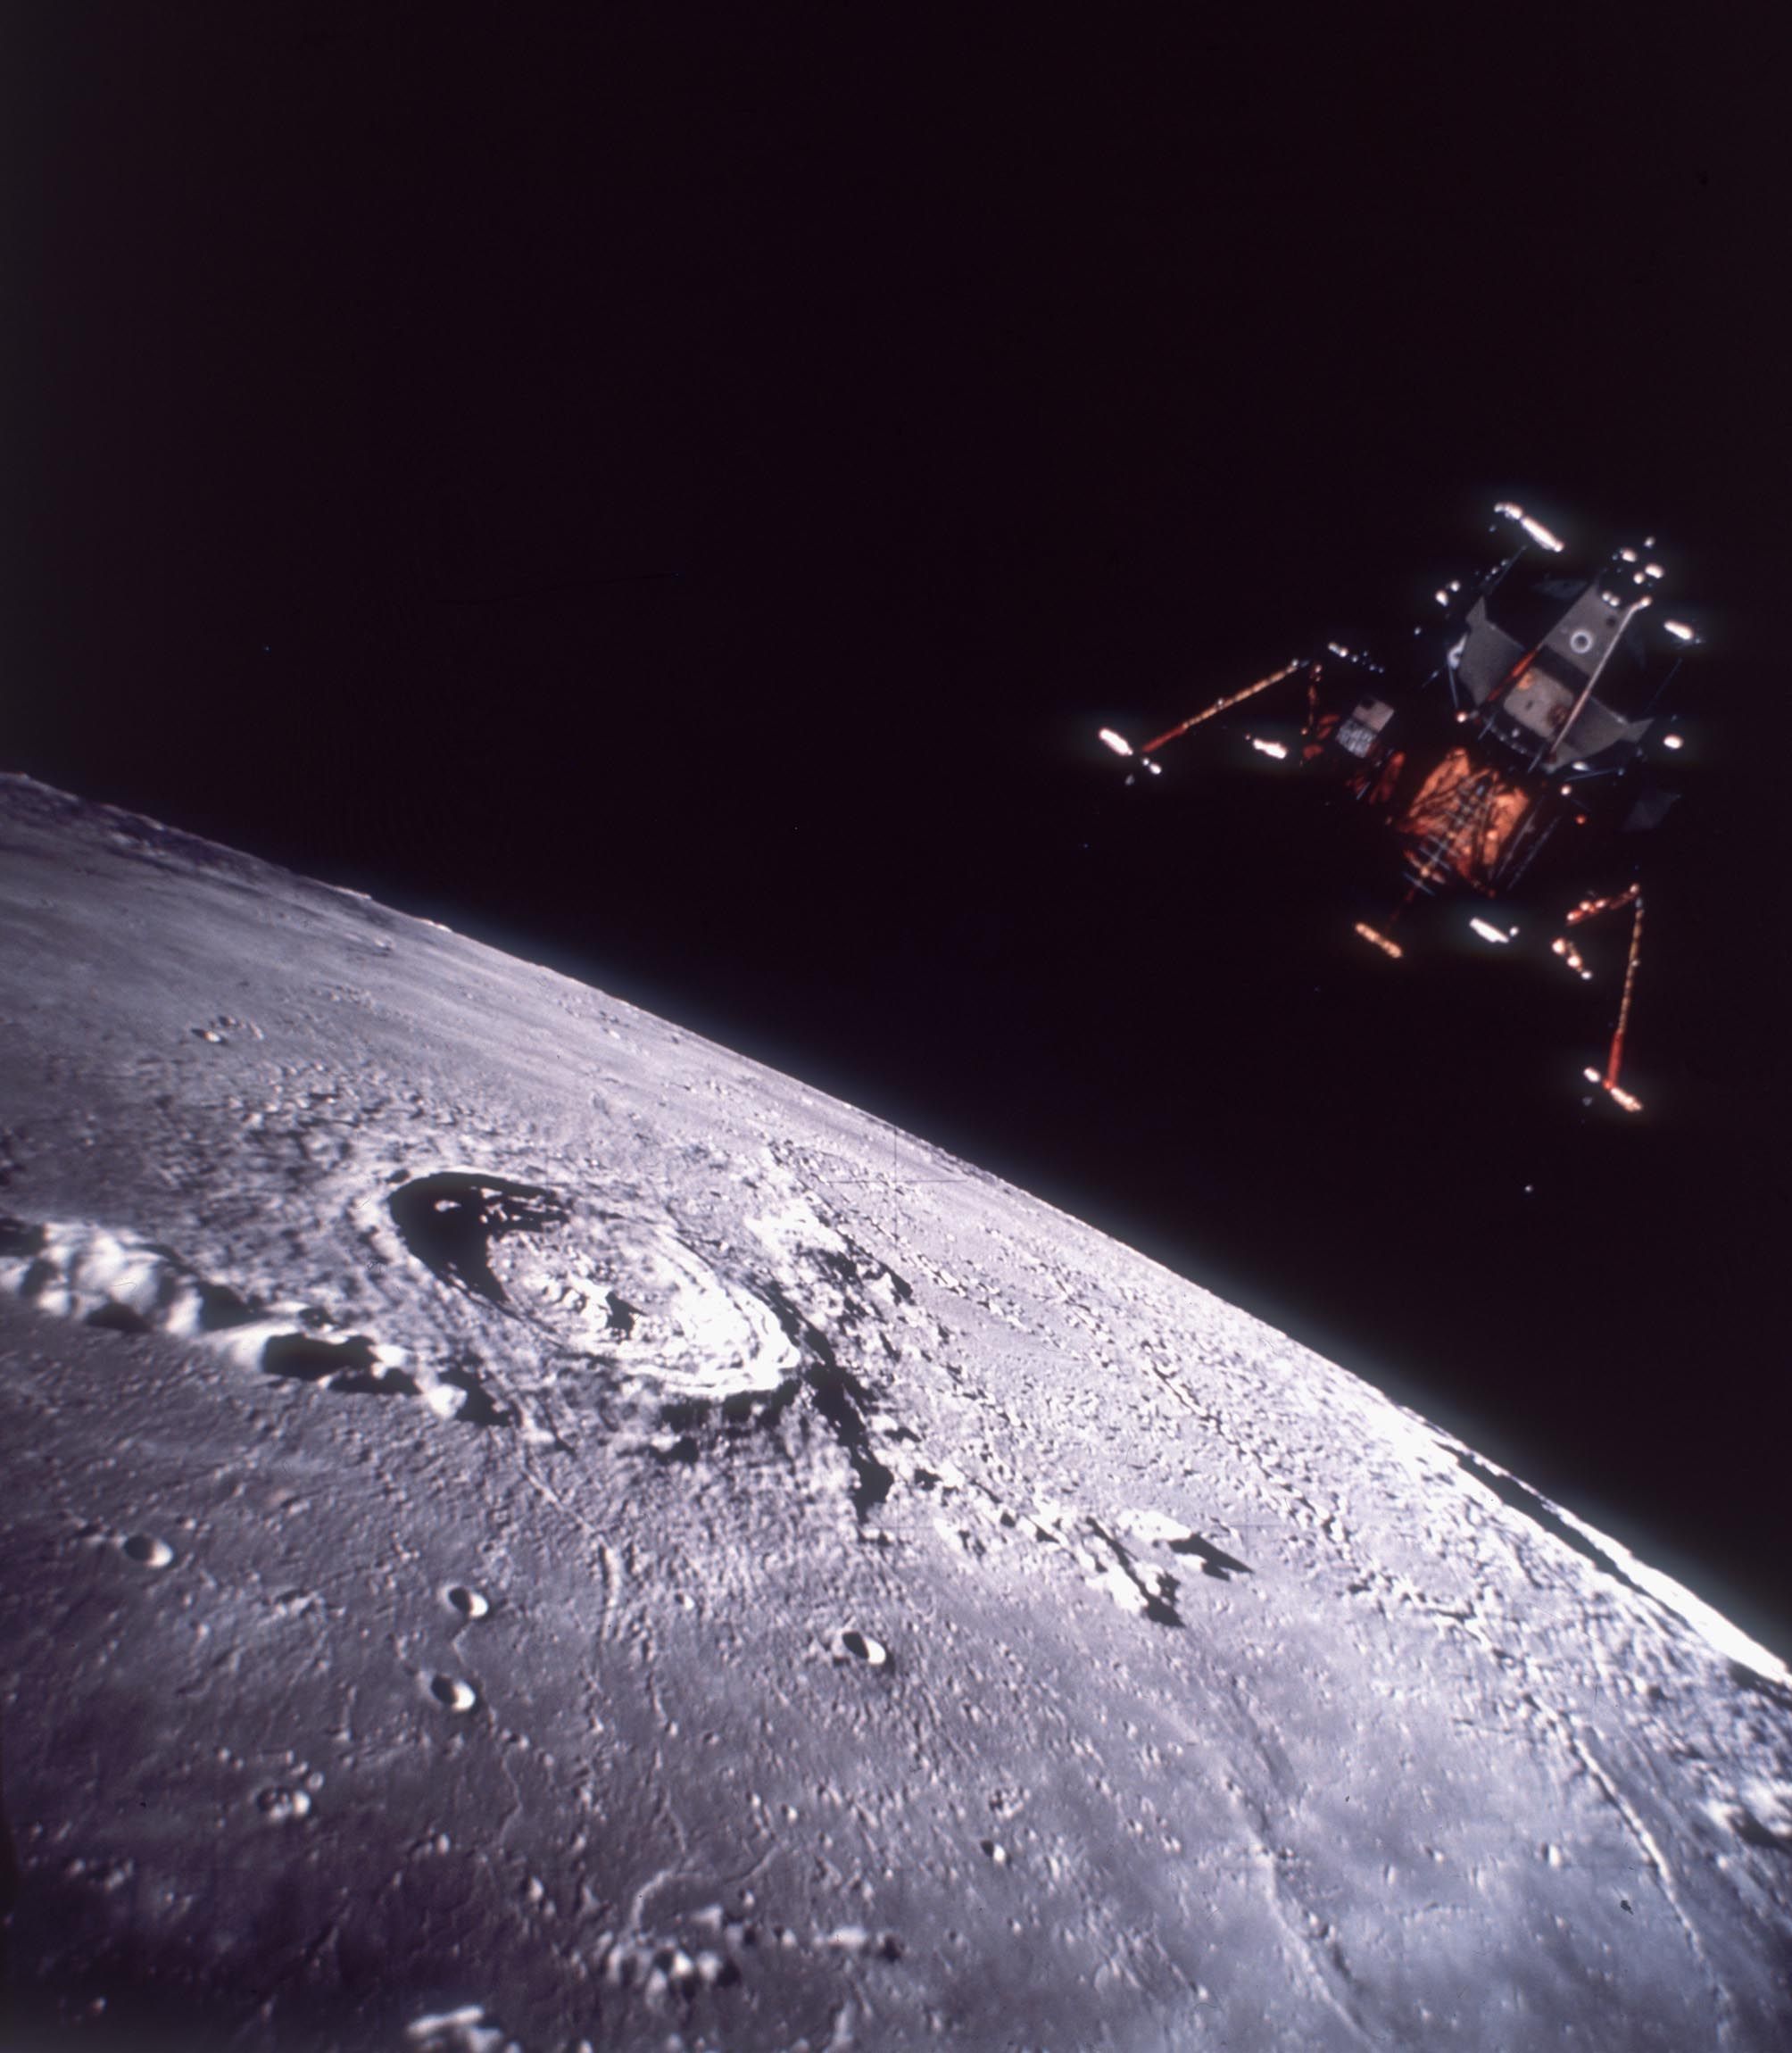 アポロ11号月面着陸ミッション 心を打つ写真の数々